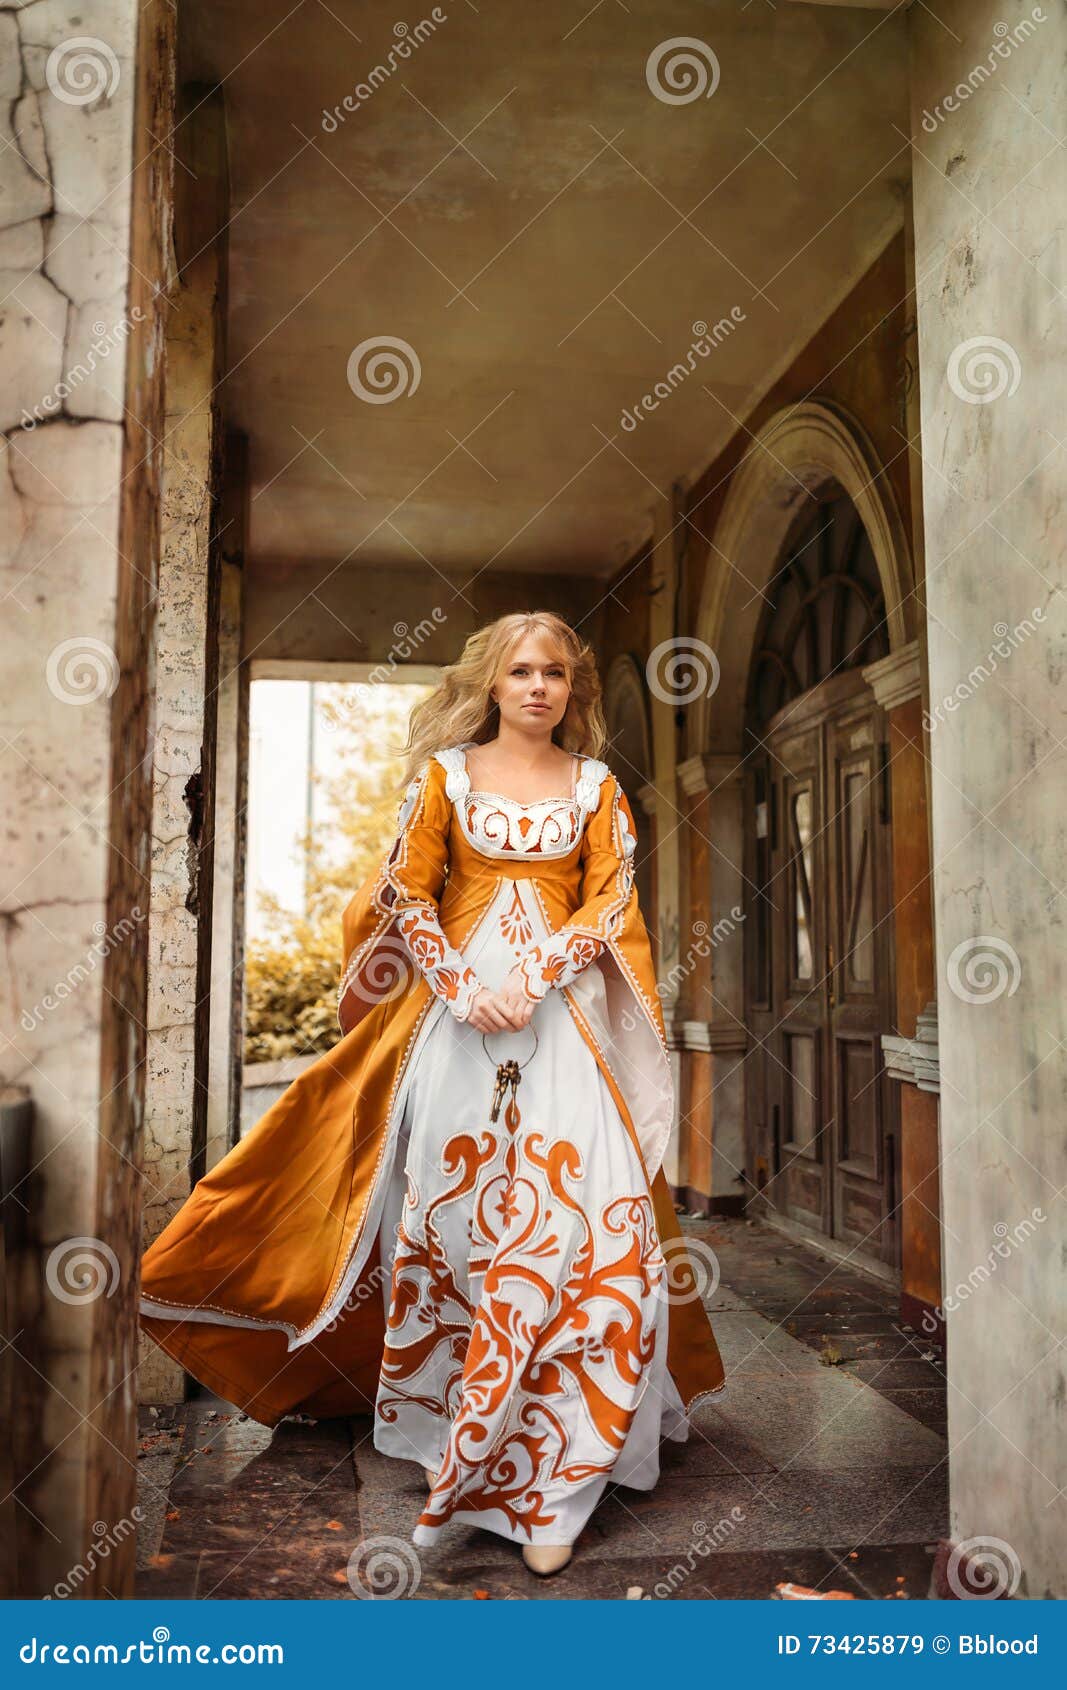 Señora en traje medieval imagen de archivo. Imagen de actitud - 73425879